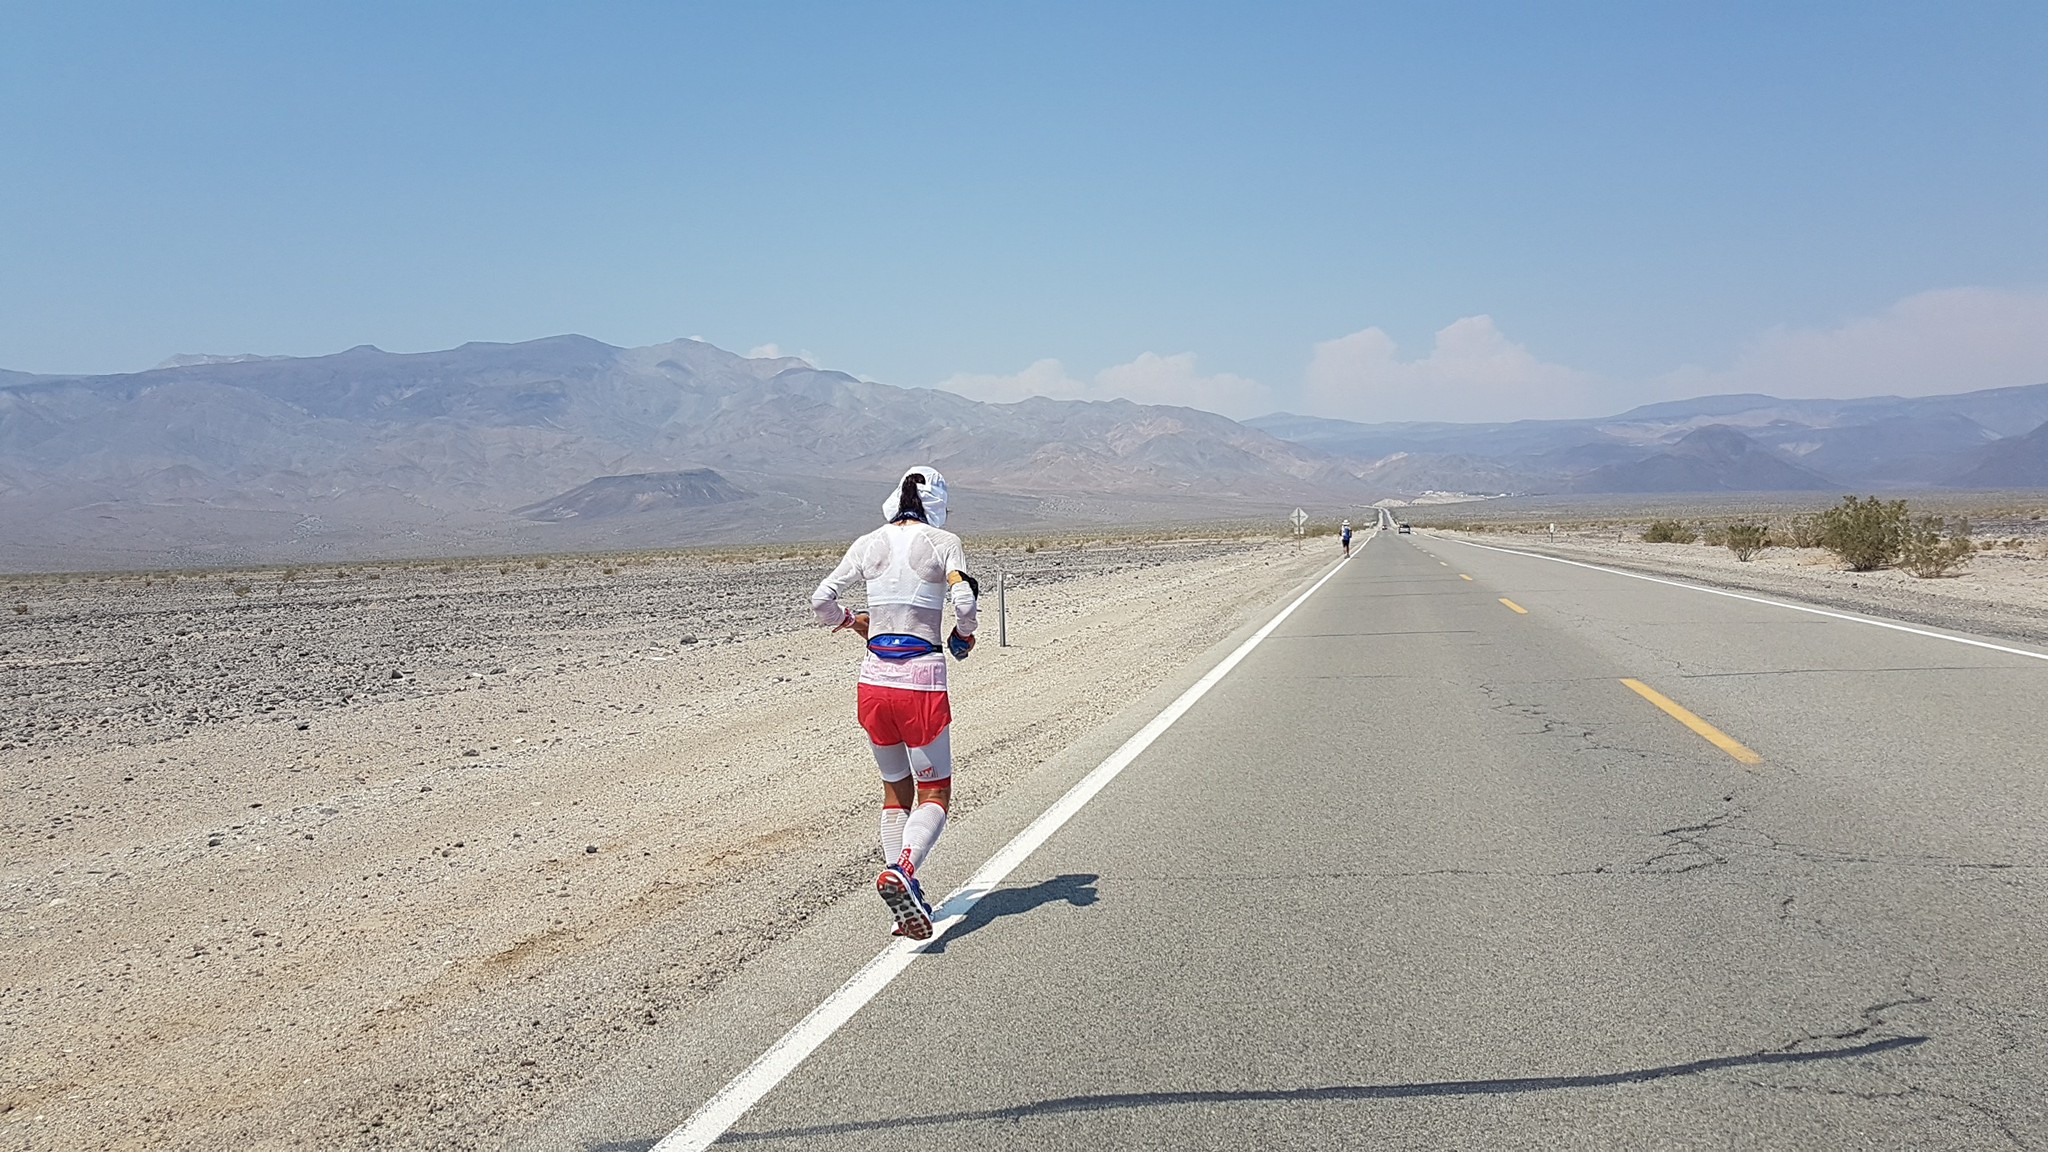 Lubics Szilvia negyedik lett a 40-50 fokban tartott 217 kilométeres sivatagi versenyen